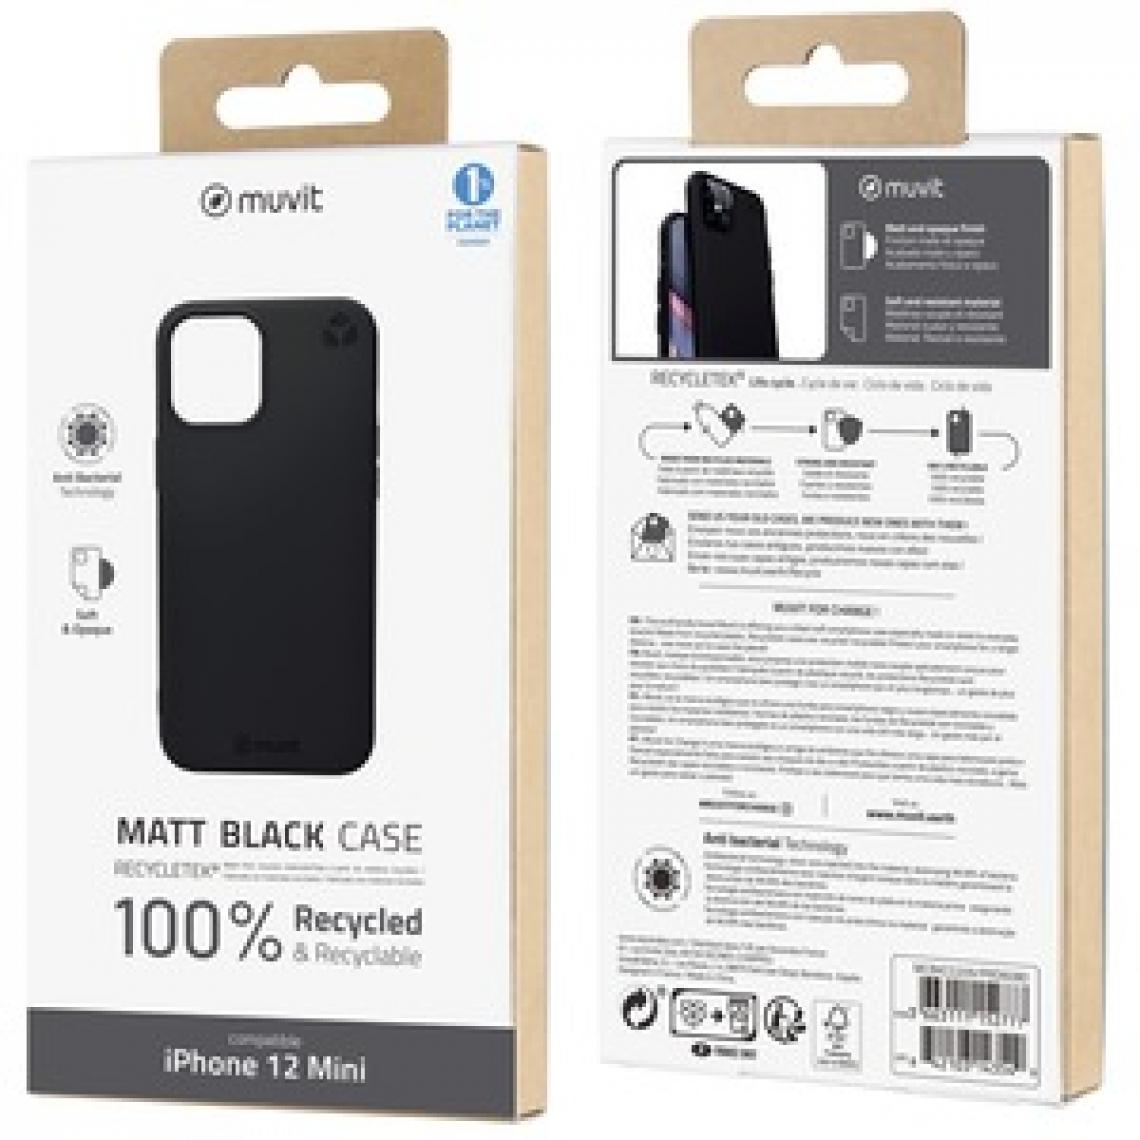 Muvit - Muvit For Change Recycletek Souple Noire: Iphone 12 Mini - Coque, étui smartphone